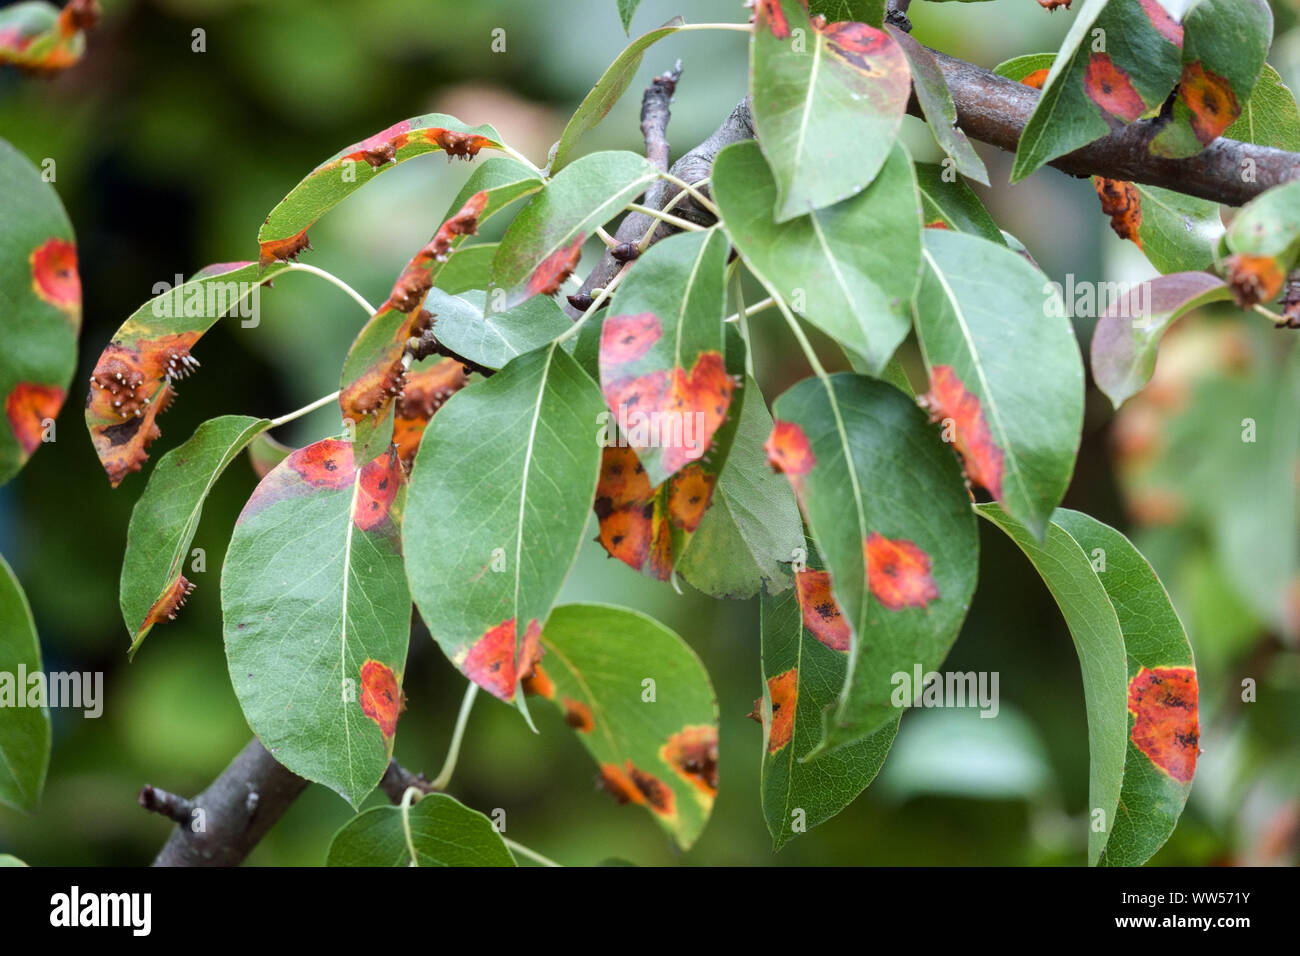 Pera herrumbre, hojas infectadas de enfermedad micótica, Pera trellis, Gymnosporangium sabinae óxido Foto de stock